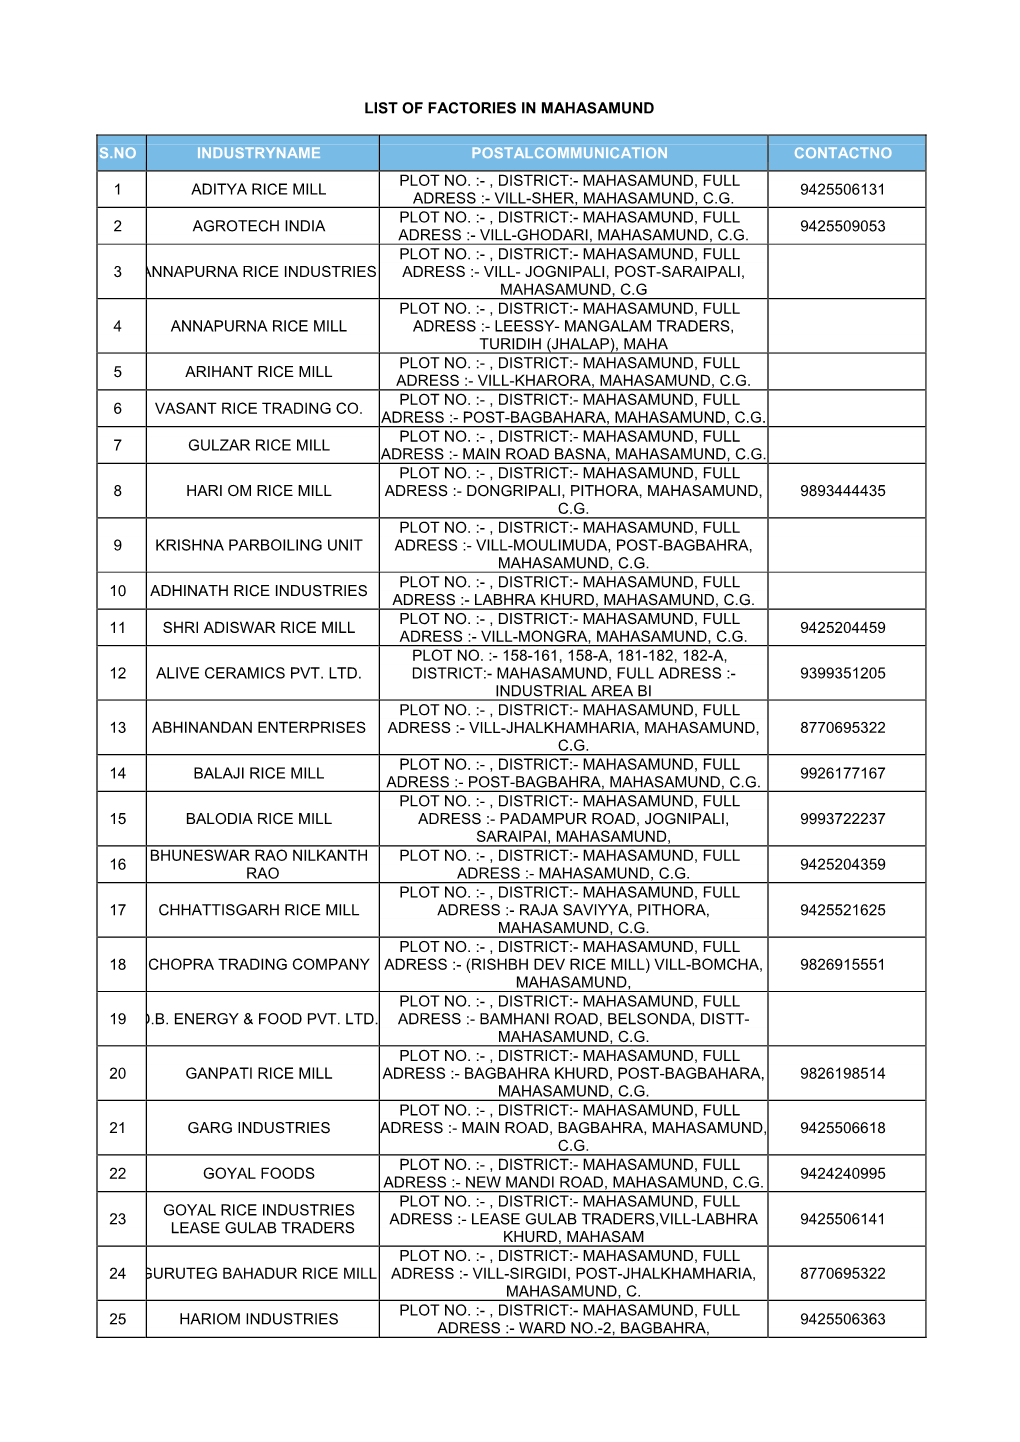 List of Factories in Mahasamund S.No